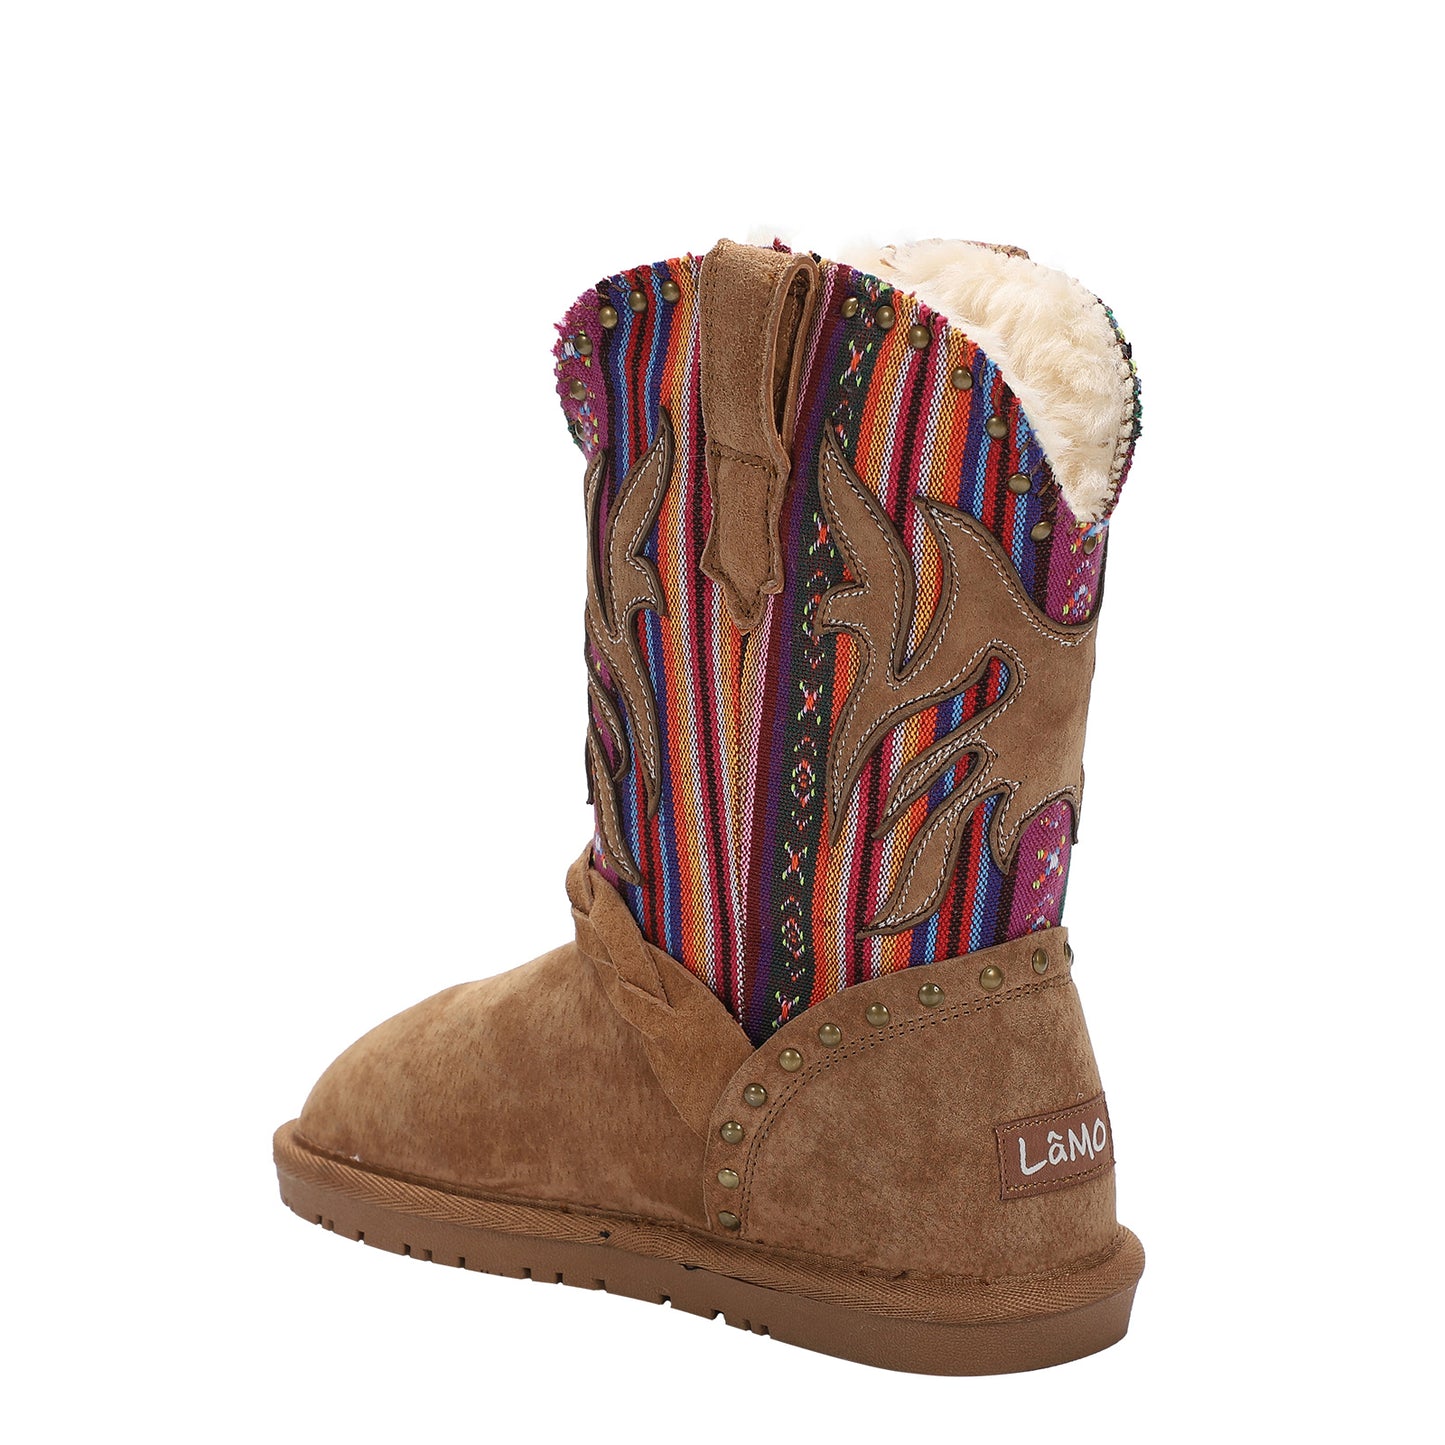 Peltz Shoes  Girl's Lamo Wrangler Boot – Little Kid & Big Kid Chestnut/Multi CK2316-963